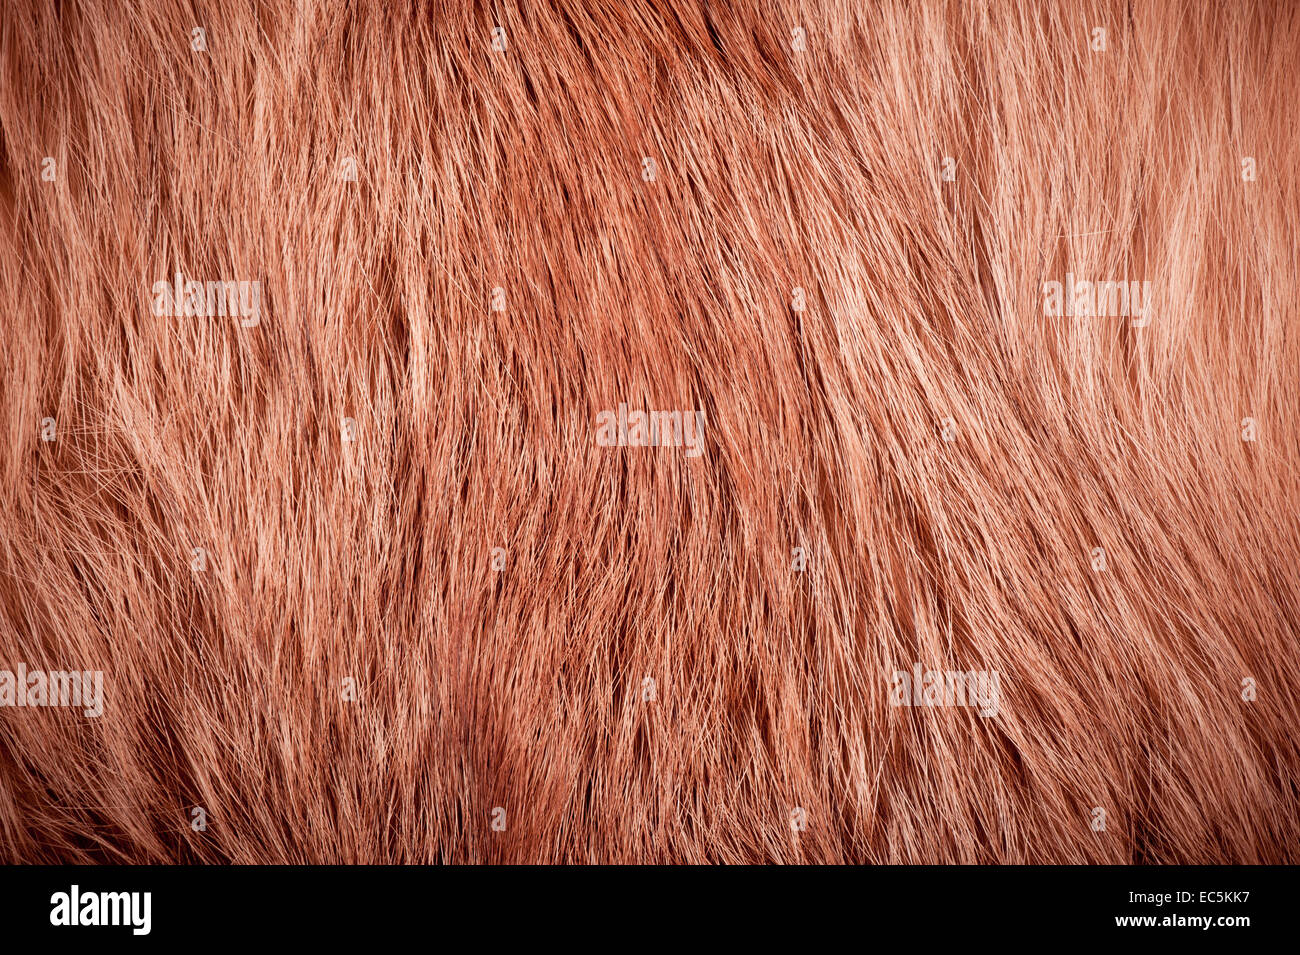 Red fox fur hair texture cloth Stock Photo